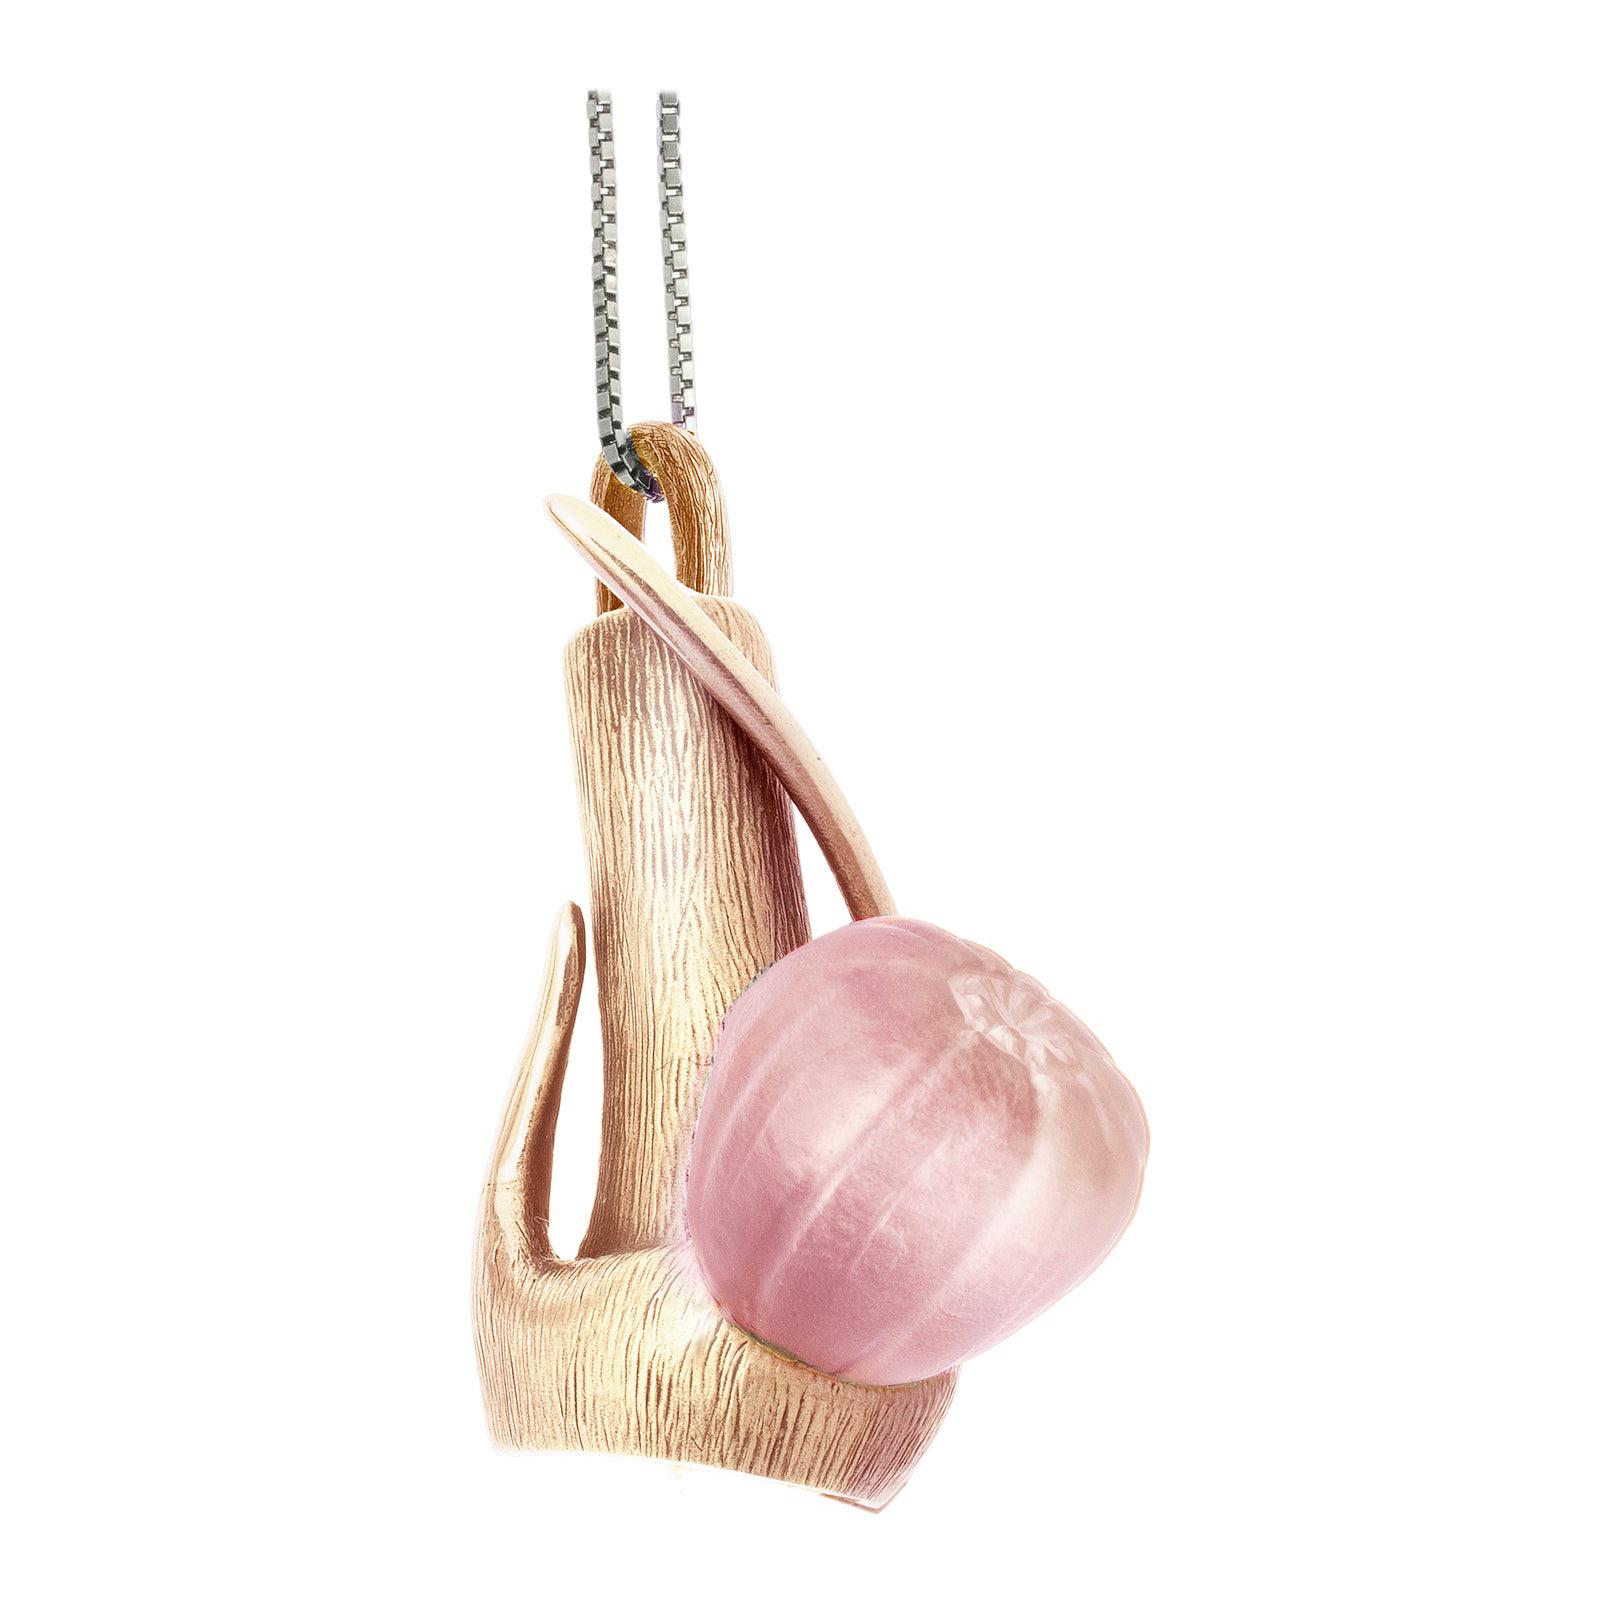 Collier pendentif en forme de figue en or rose de l'artiste présenté dans Vogue